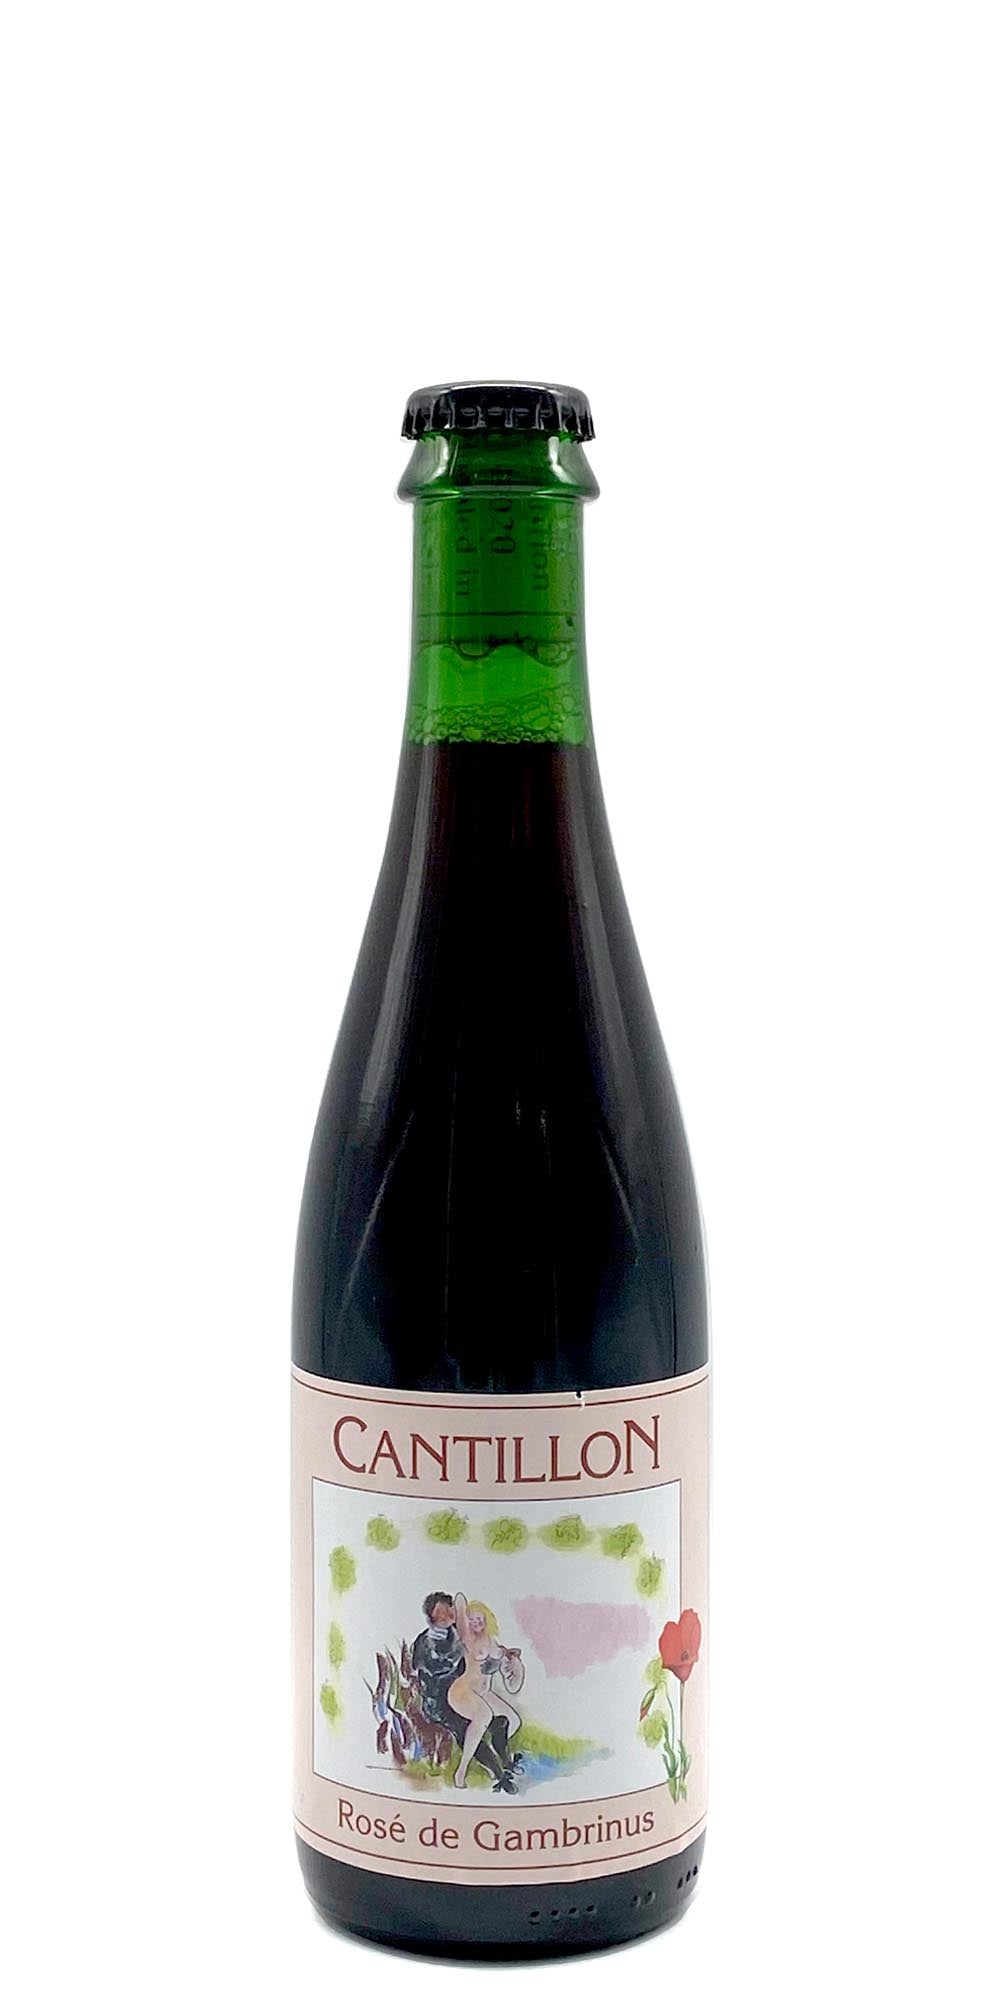 Cantillon - Rose de Gambrinus 2020 - 375ml - Drikbeer - Order Craft Beer Online